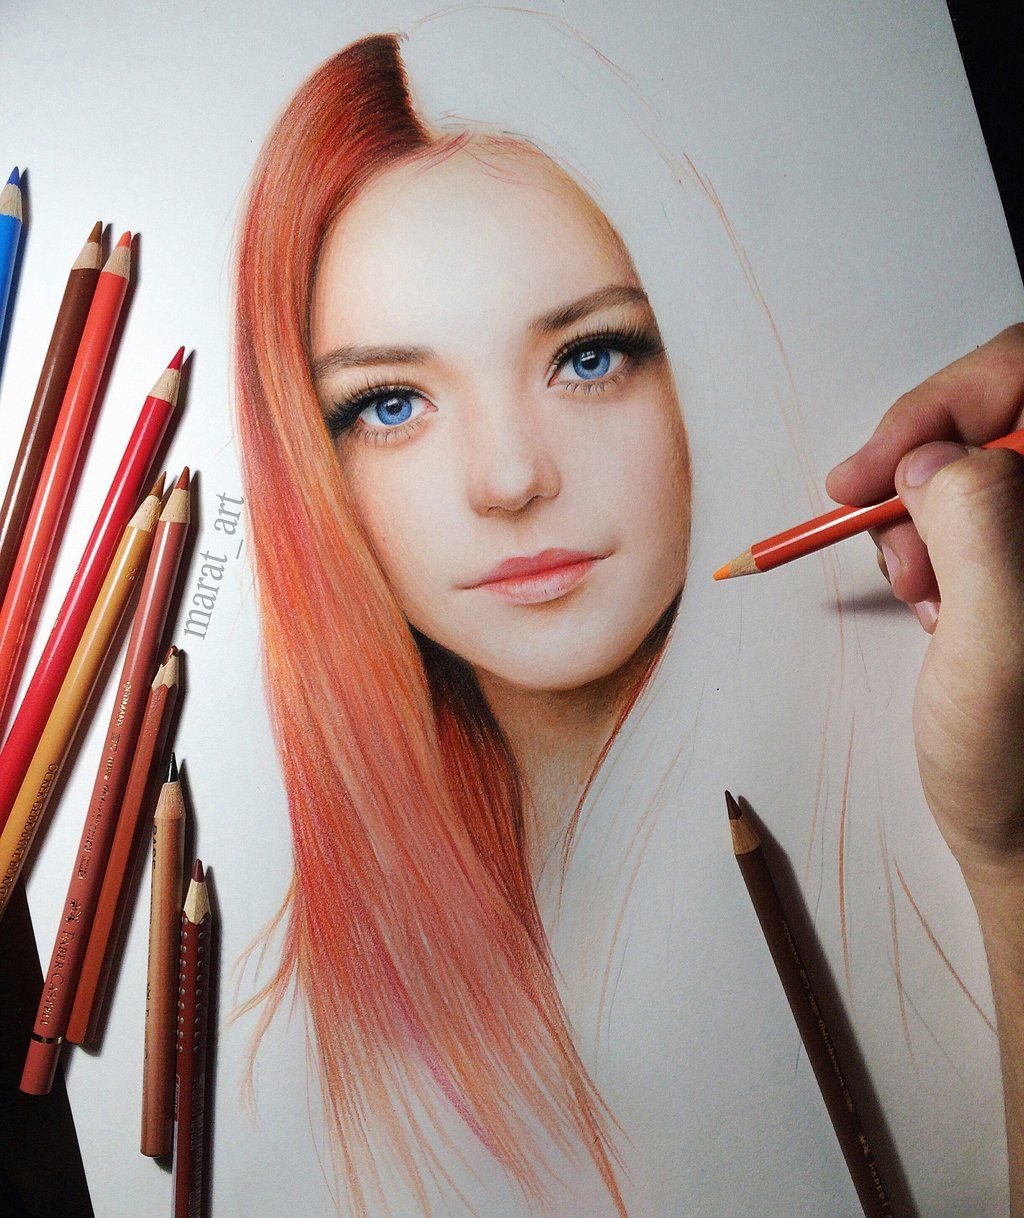 Интересные цветными карандашами. Портрет цветными карандашами. Портрет девушки цветными карандашами. Рисунки цветными карандашами. Рисование цветными карандашами портрет.